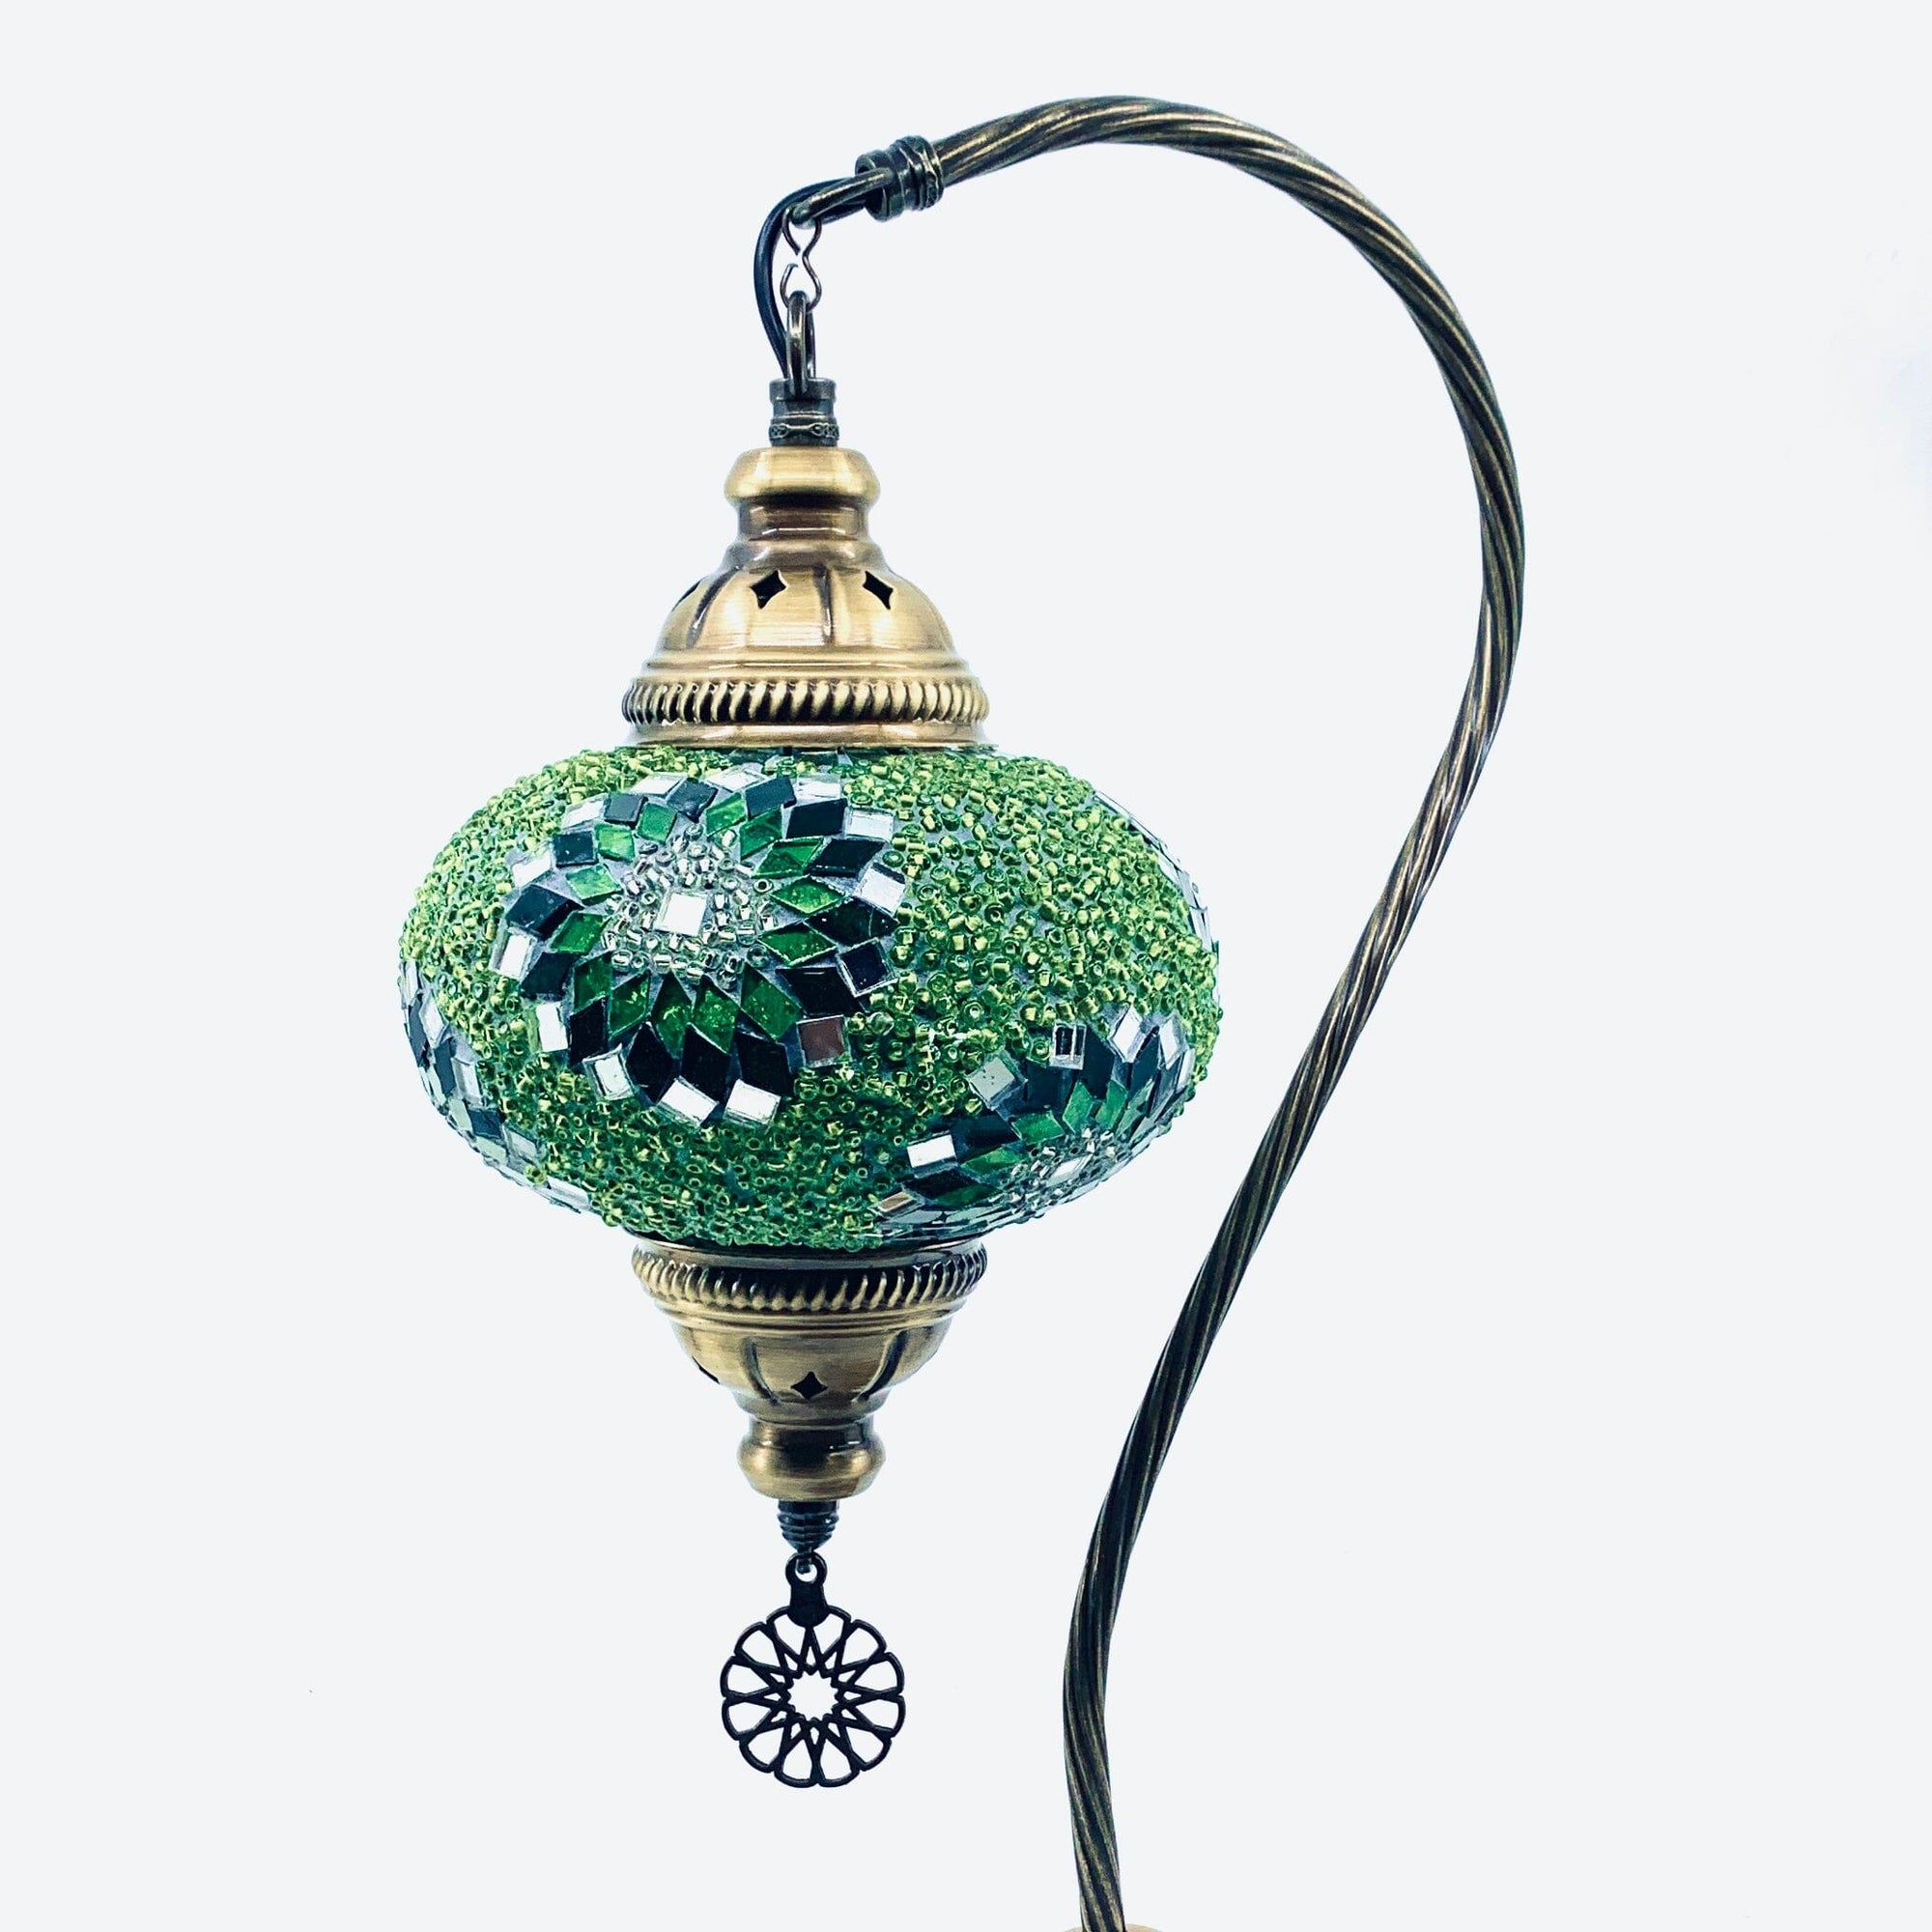 Half Heart Turkish Mosaic Lamp, 5 Decor Natto USA 